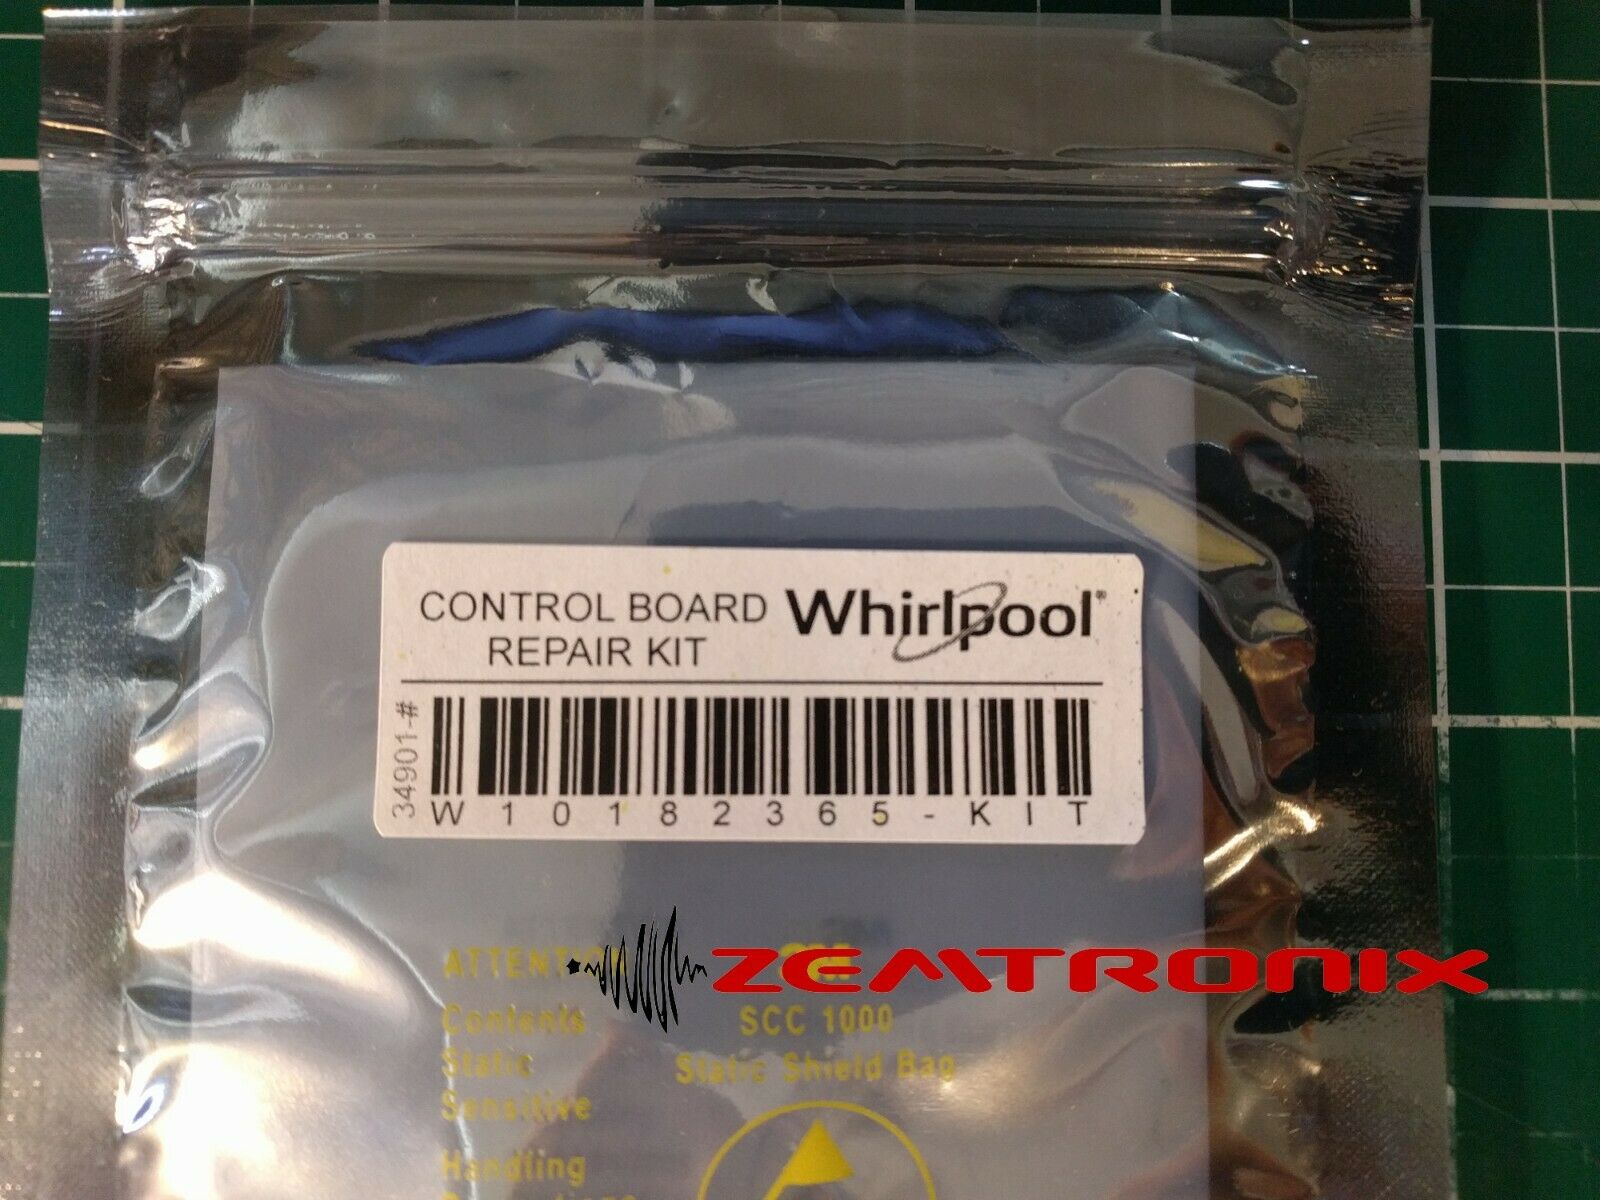 Control Board Repair Kit for W10182365 W10182366 (F01 error) Whirlpool Maytag